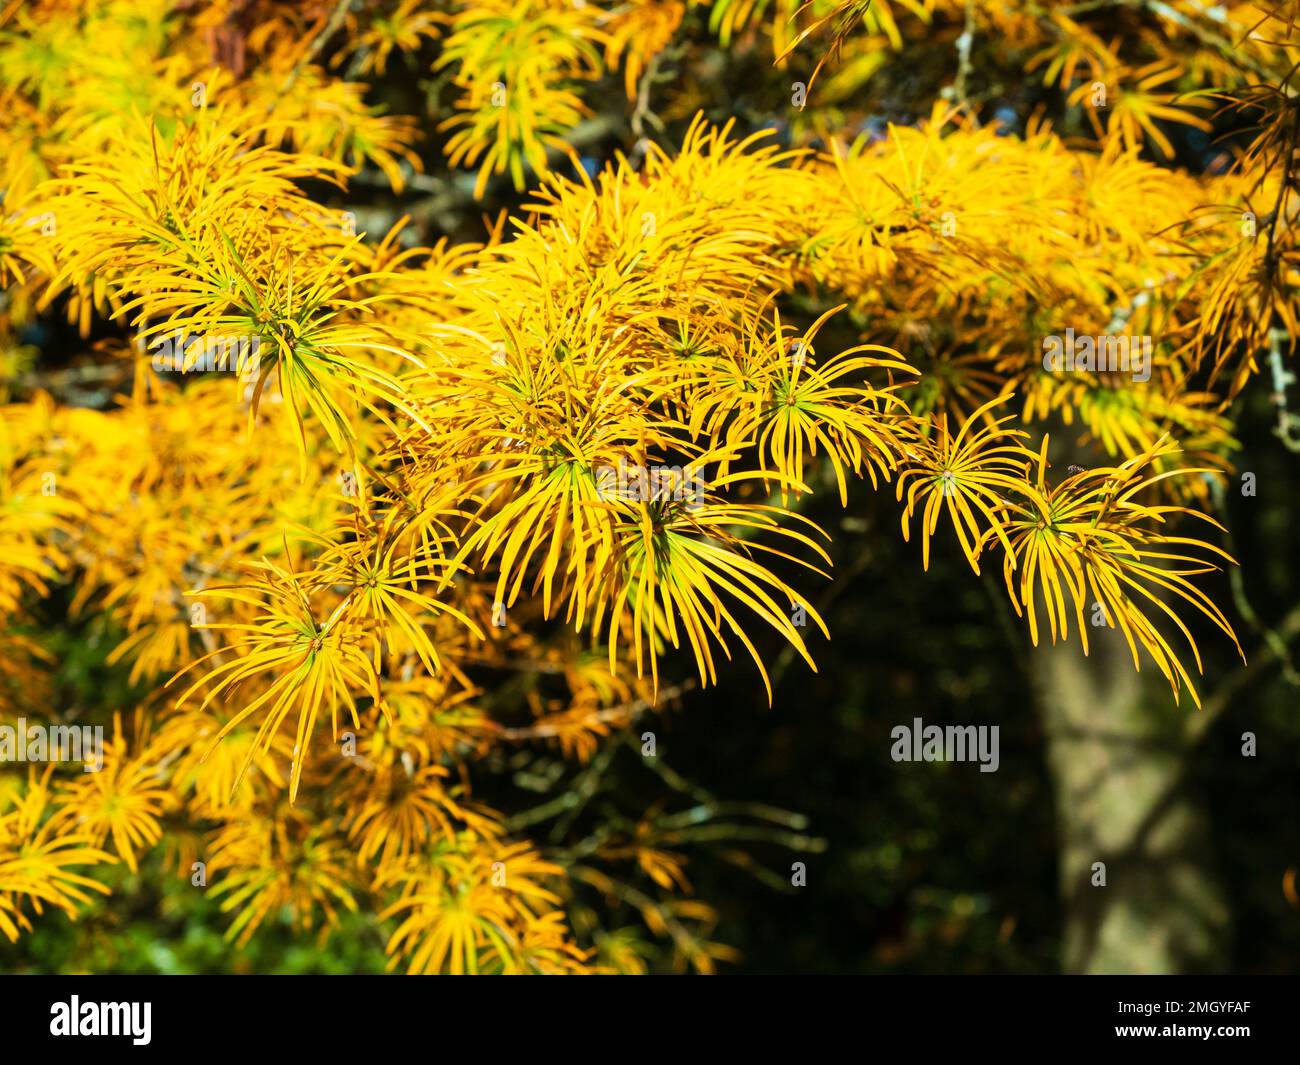 Colore giallo-arancio autunnale nelle foglie d'ago della conifera decidua Larix decidua, il larice europeo Foto Stock